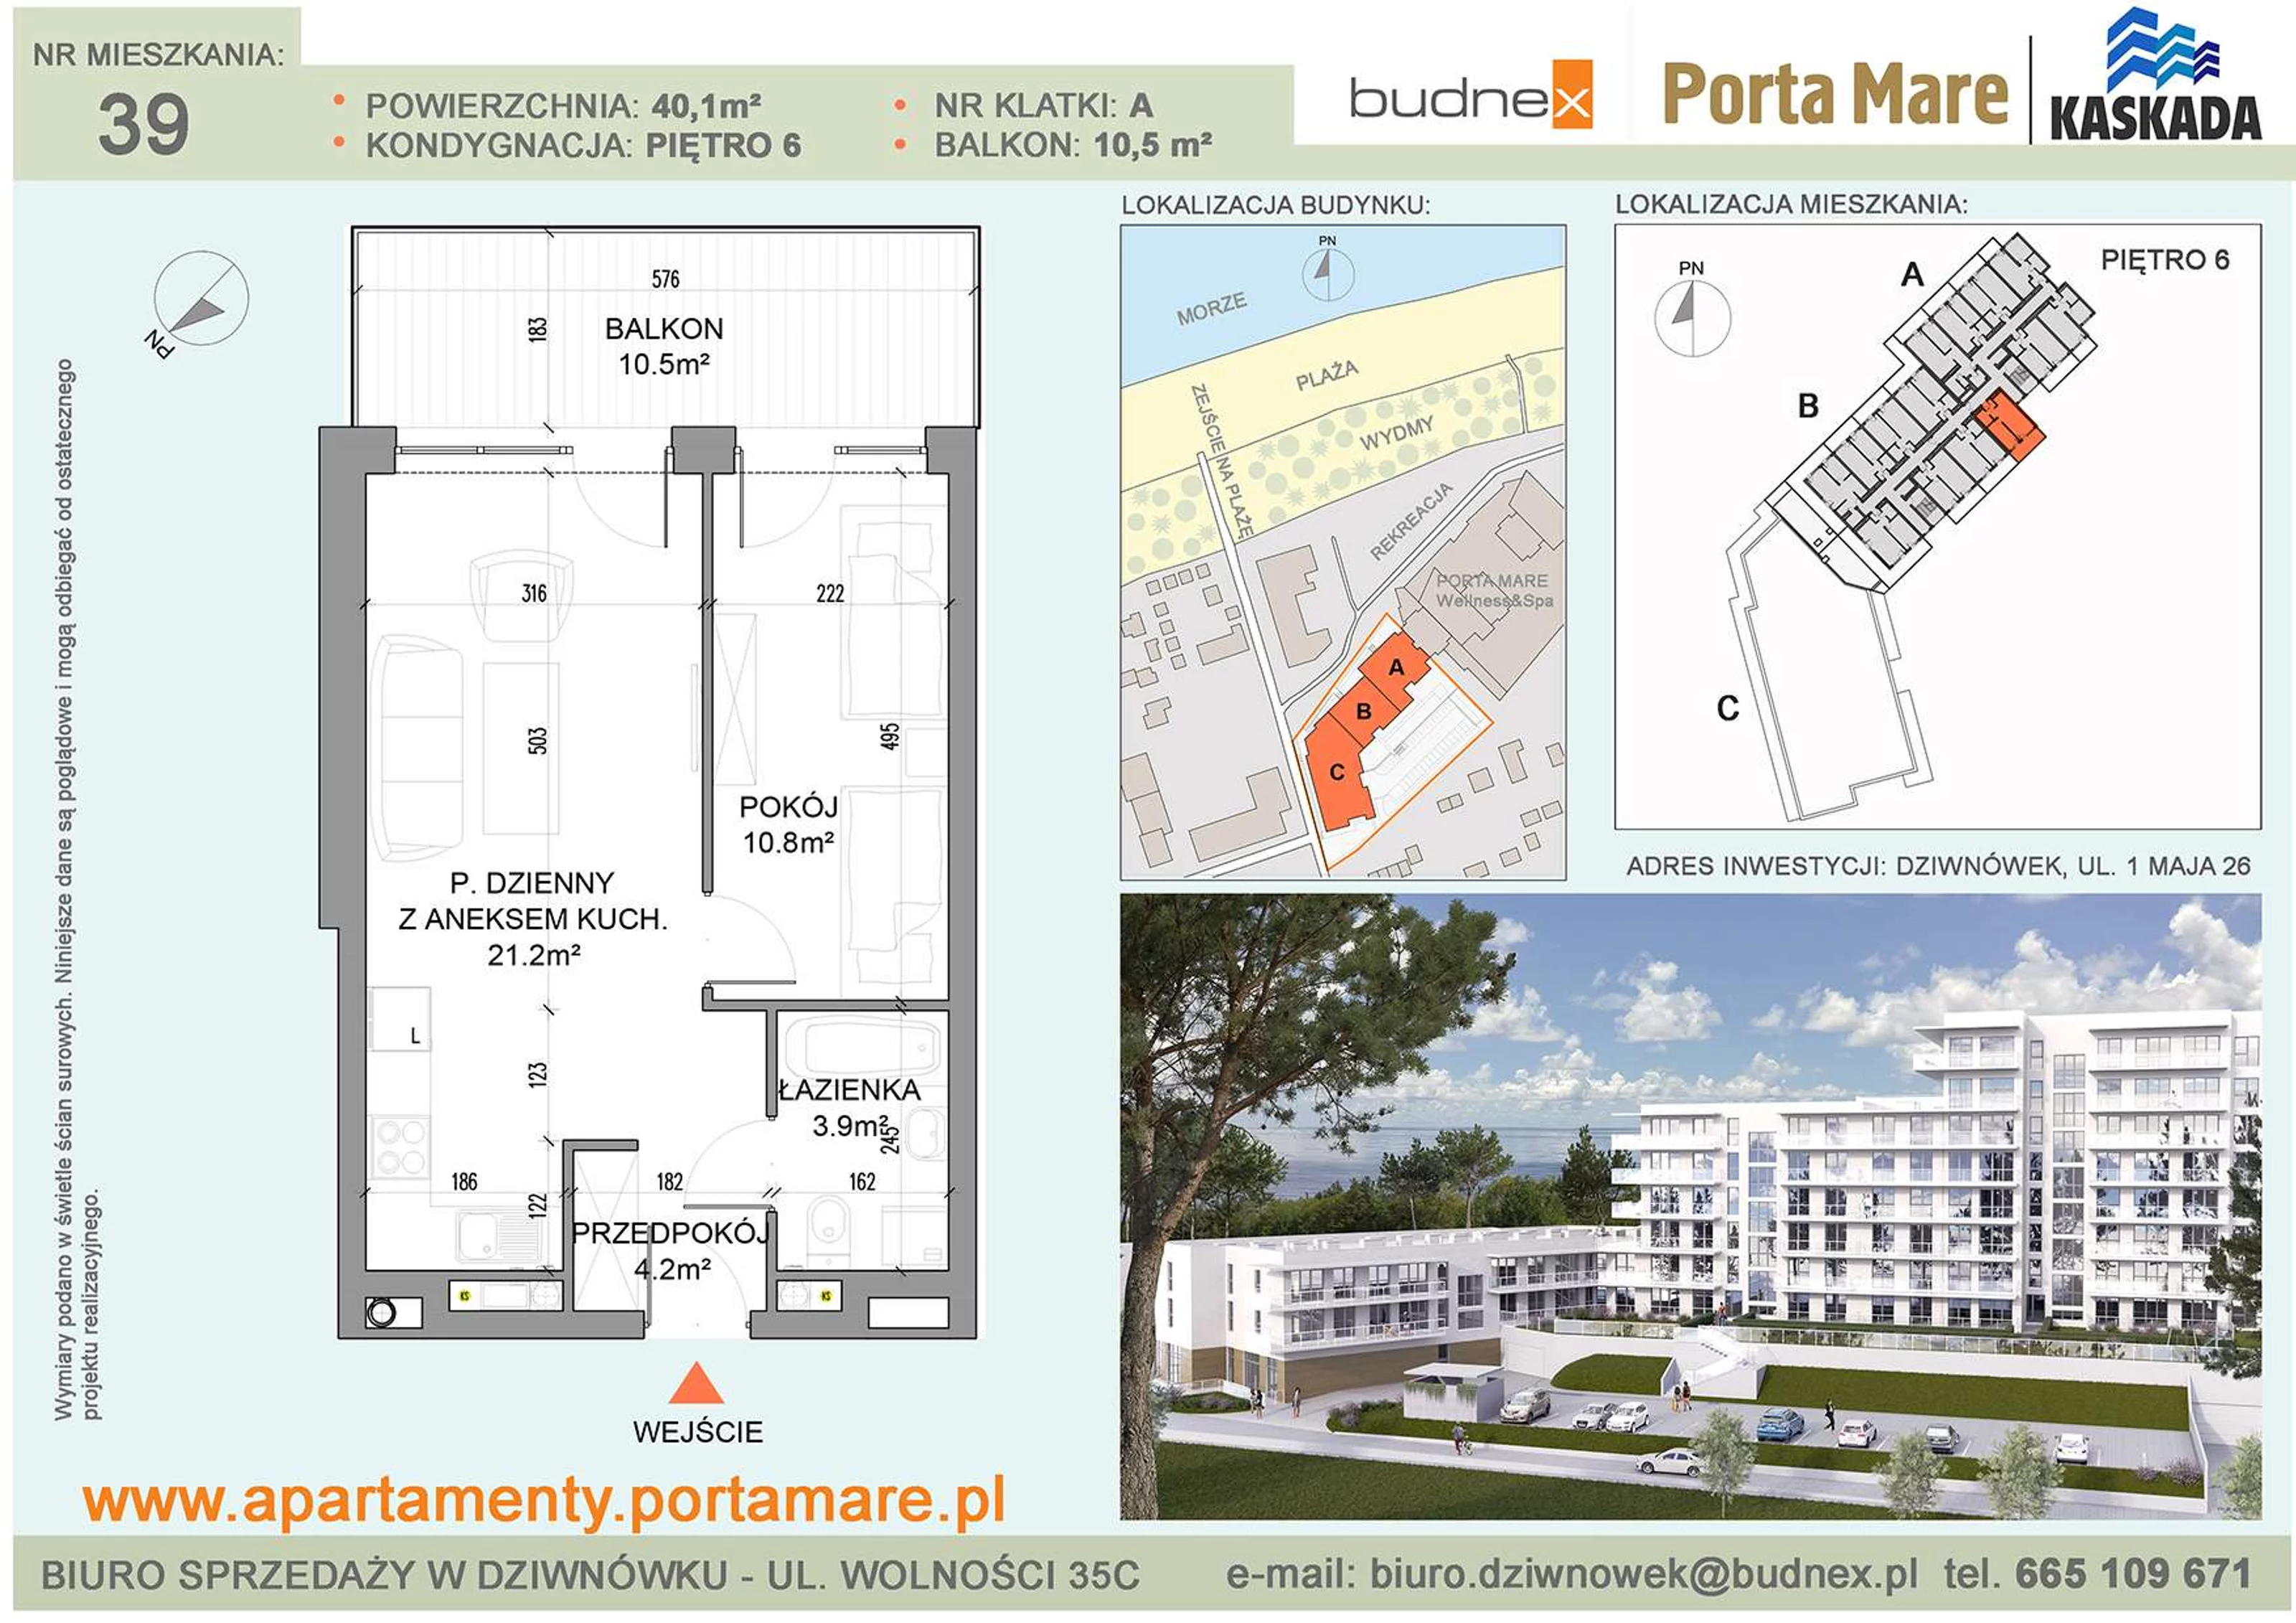 Apartament 40,10 m², piętro 6, oferta nr A/M39, Porta Mare Kaskada, Dziwnówek, ul. 1 Maja 26